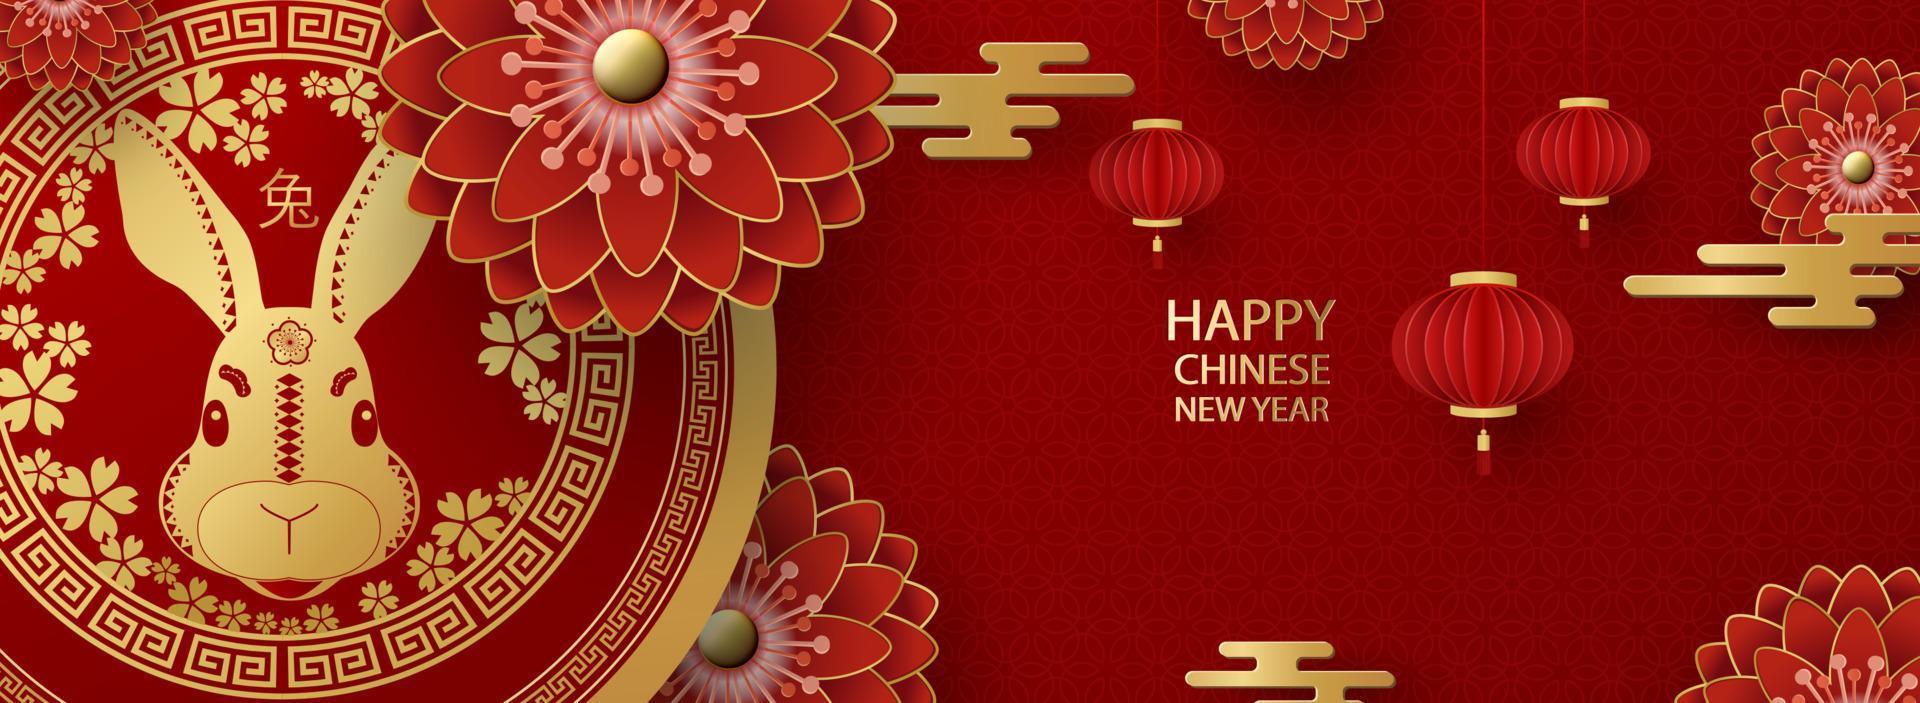 feliz año nuevo chino 2023, año del conejo. traducción del chino - feliz año nuevo, signo zodiacal de conejo. patrones tradicionales, crisantemos, farolillos. tarjeta navideña, pancarta, volante. vector